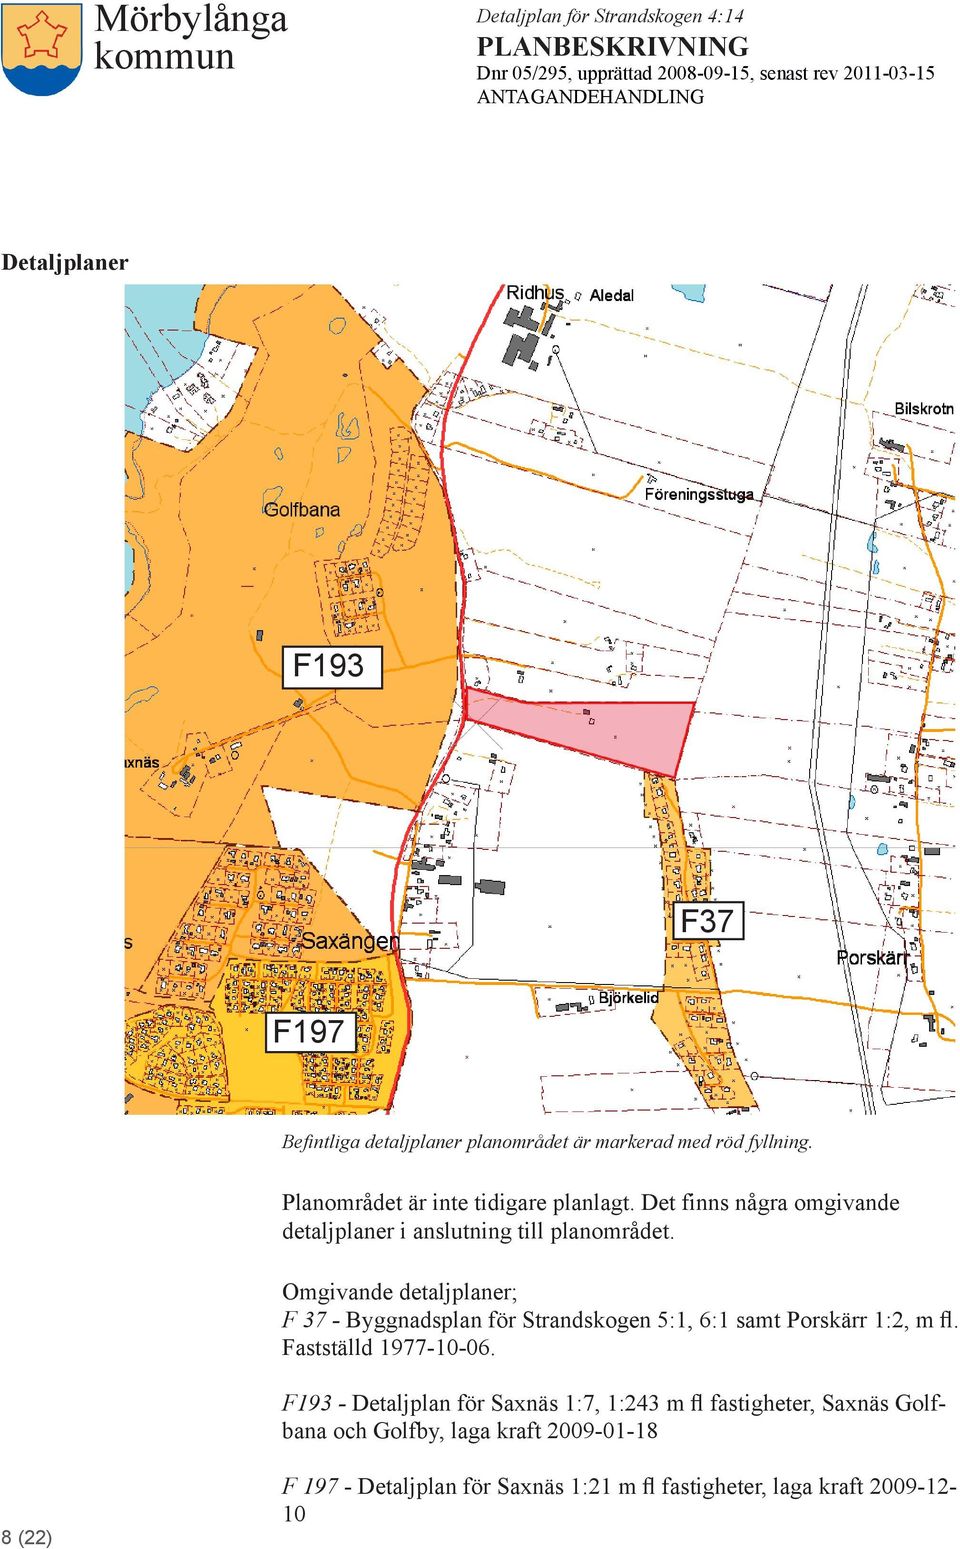 Omgivande detaljplaner; F 37 - Byggnadsplan för Strandskogen 5:1, 6:1 samt Porskärr 1:2, m fl. Fastställd 1977-10-06.